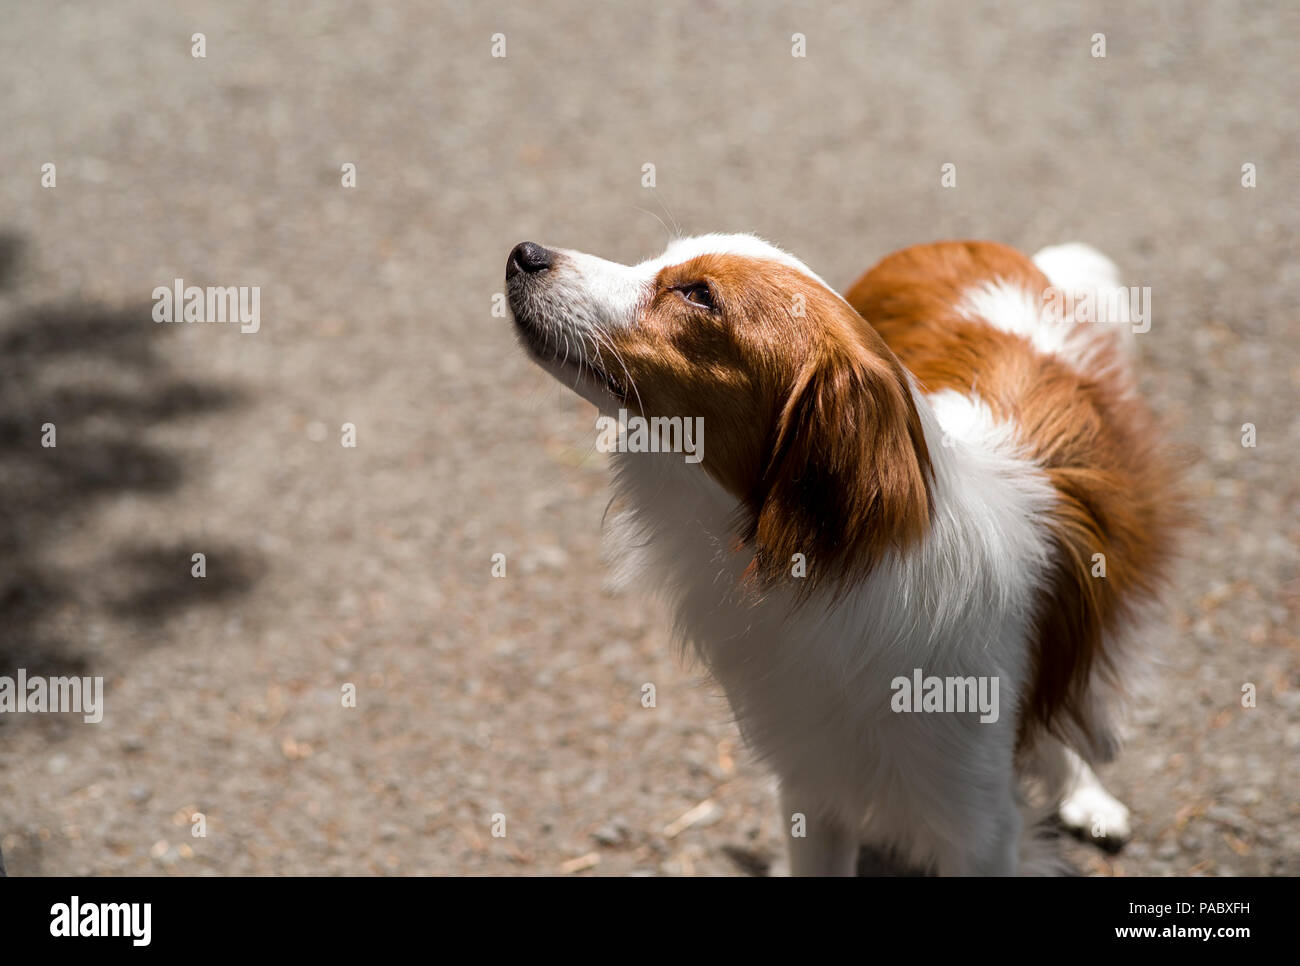 Kooikerhondje Hund, Hund, frei ohne Leine auf Pfad, seltene Herding Rasse aus den Niederlanden Stockfoto